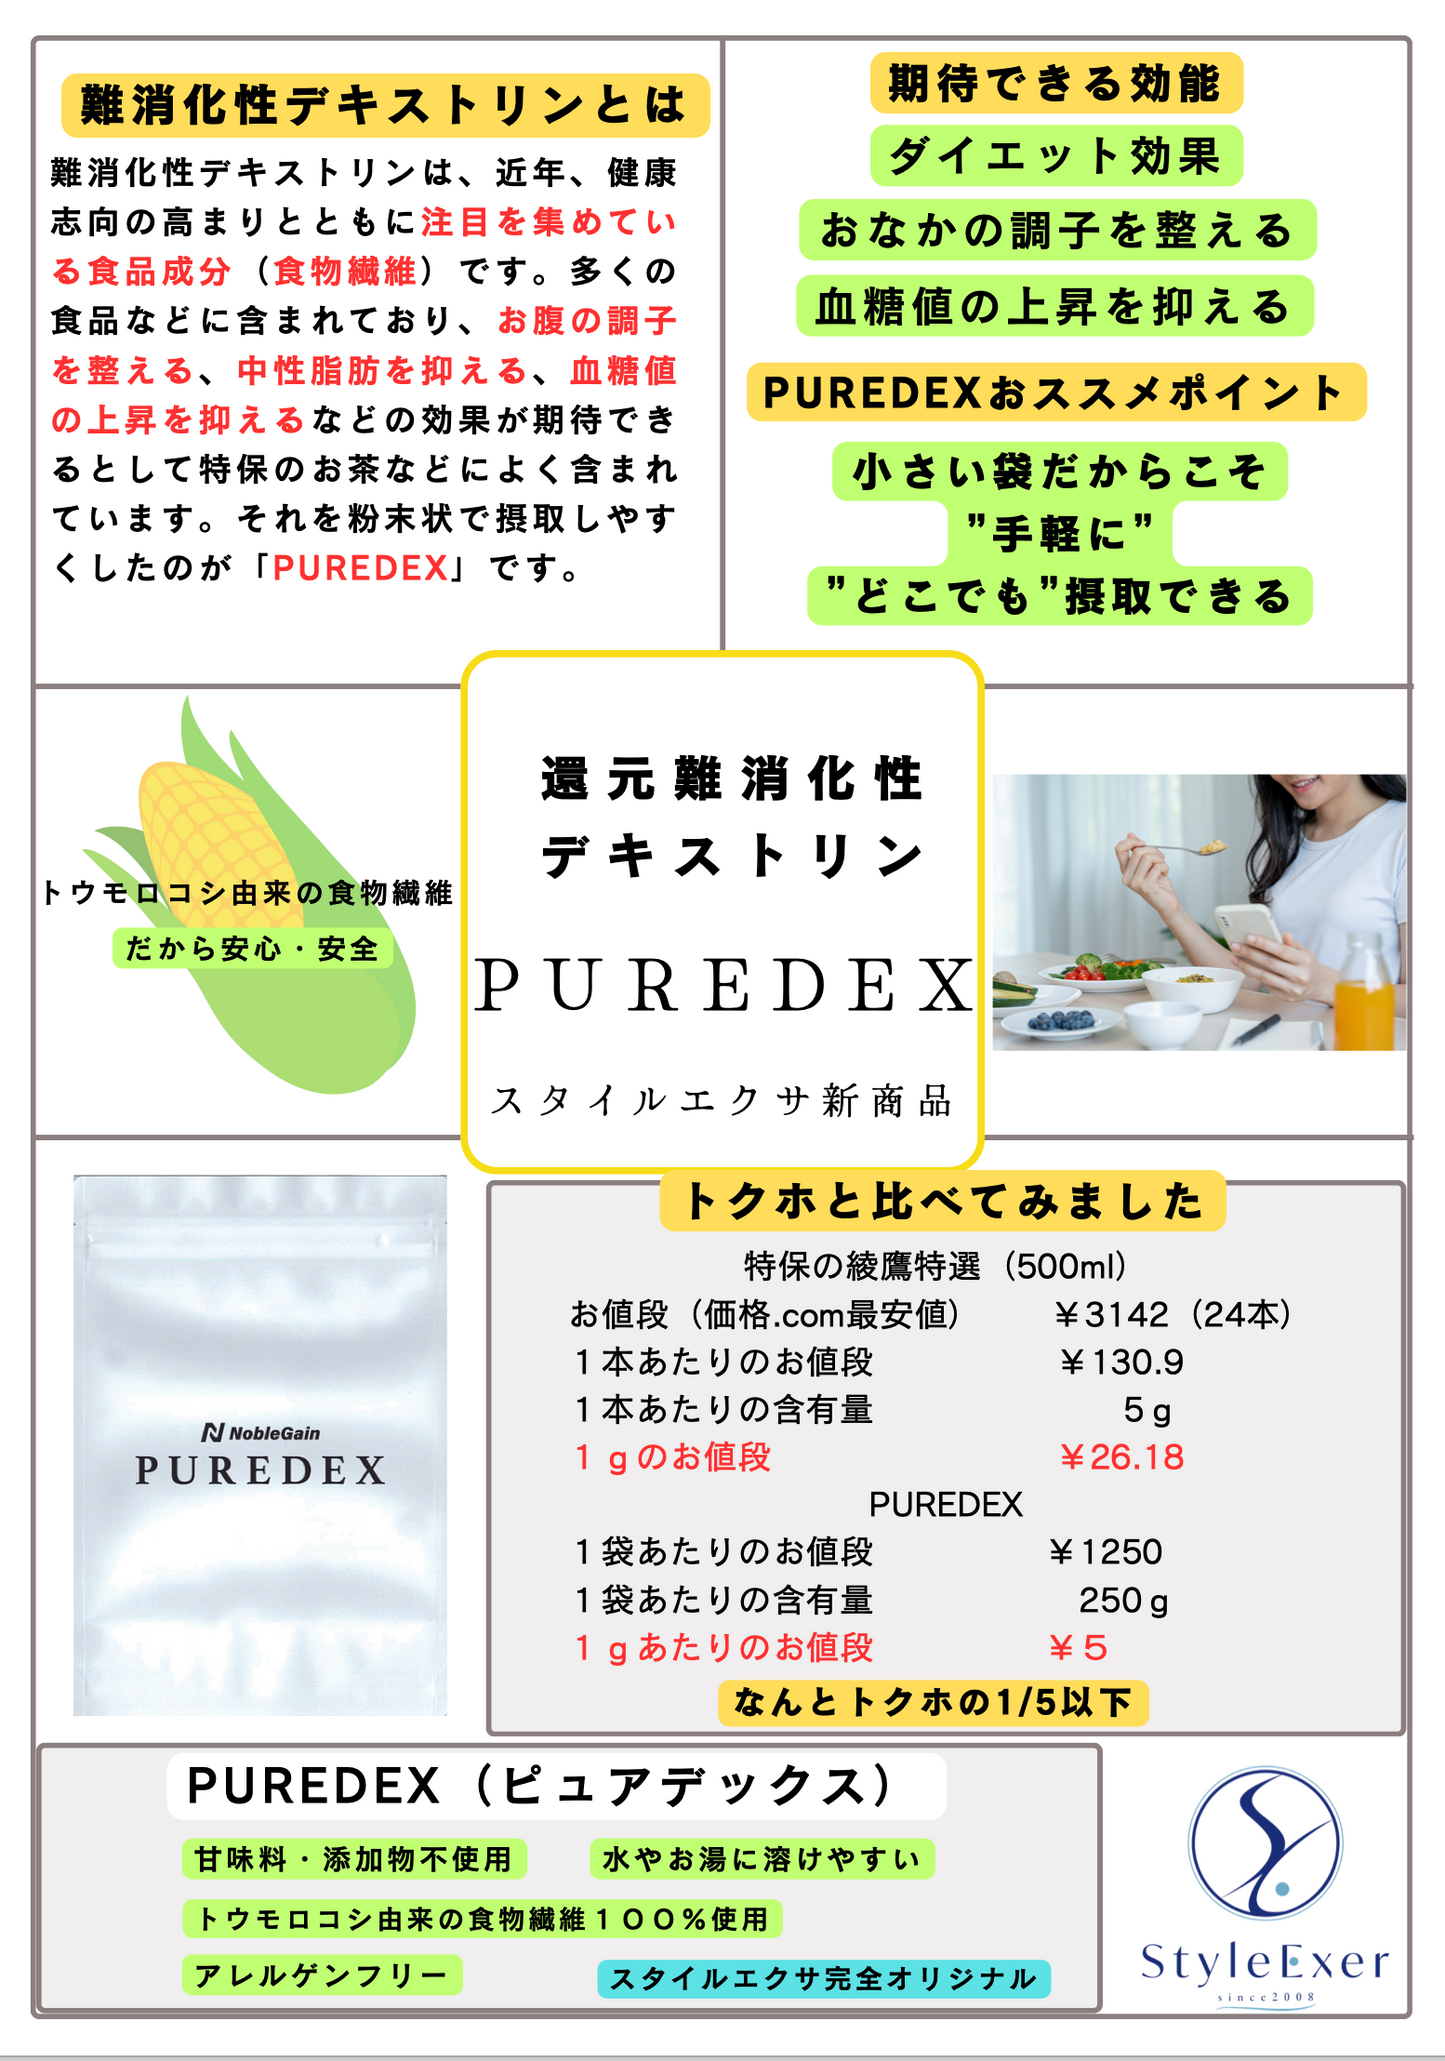 PUREDEX